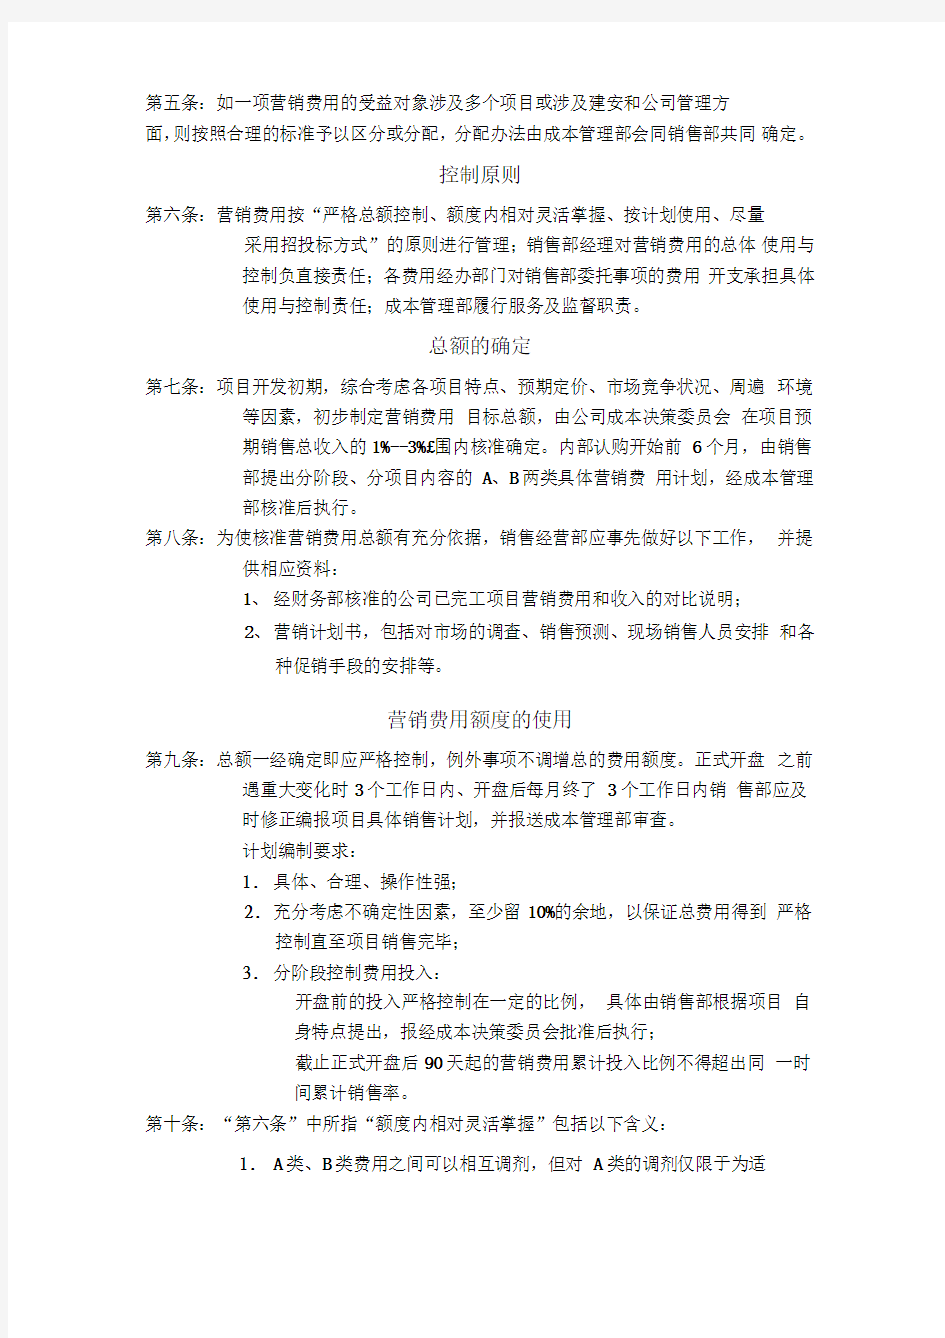 深圳市万科房地产有限公司营销费用管理规范